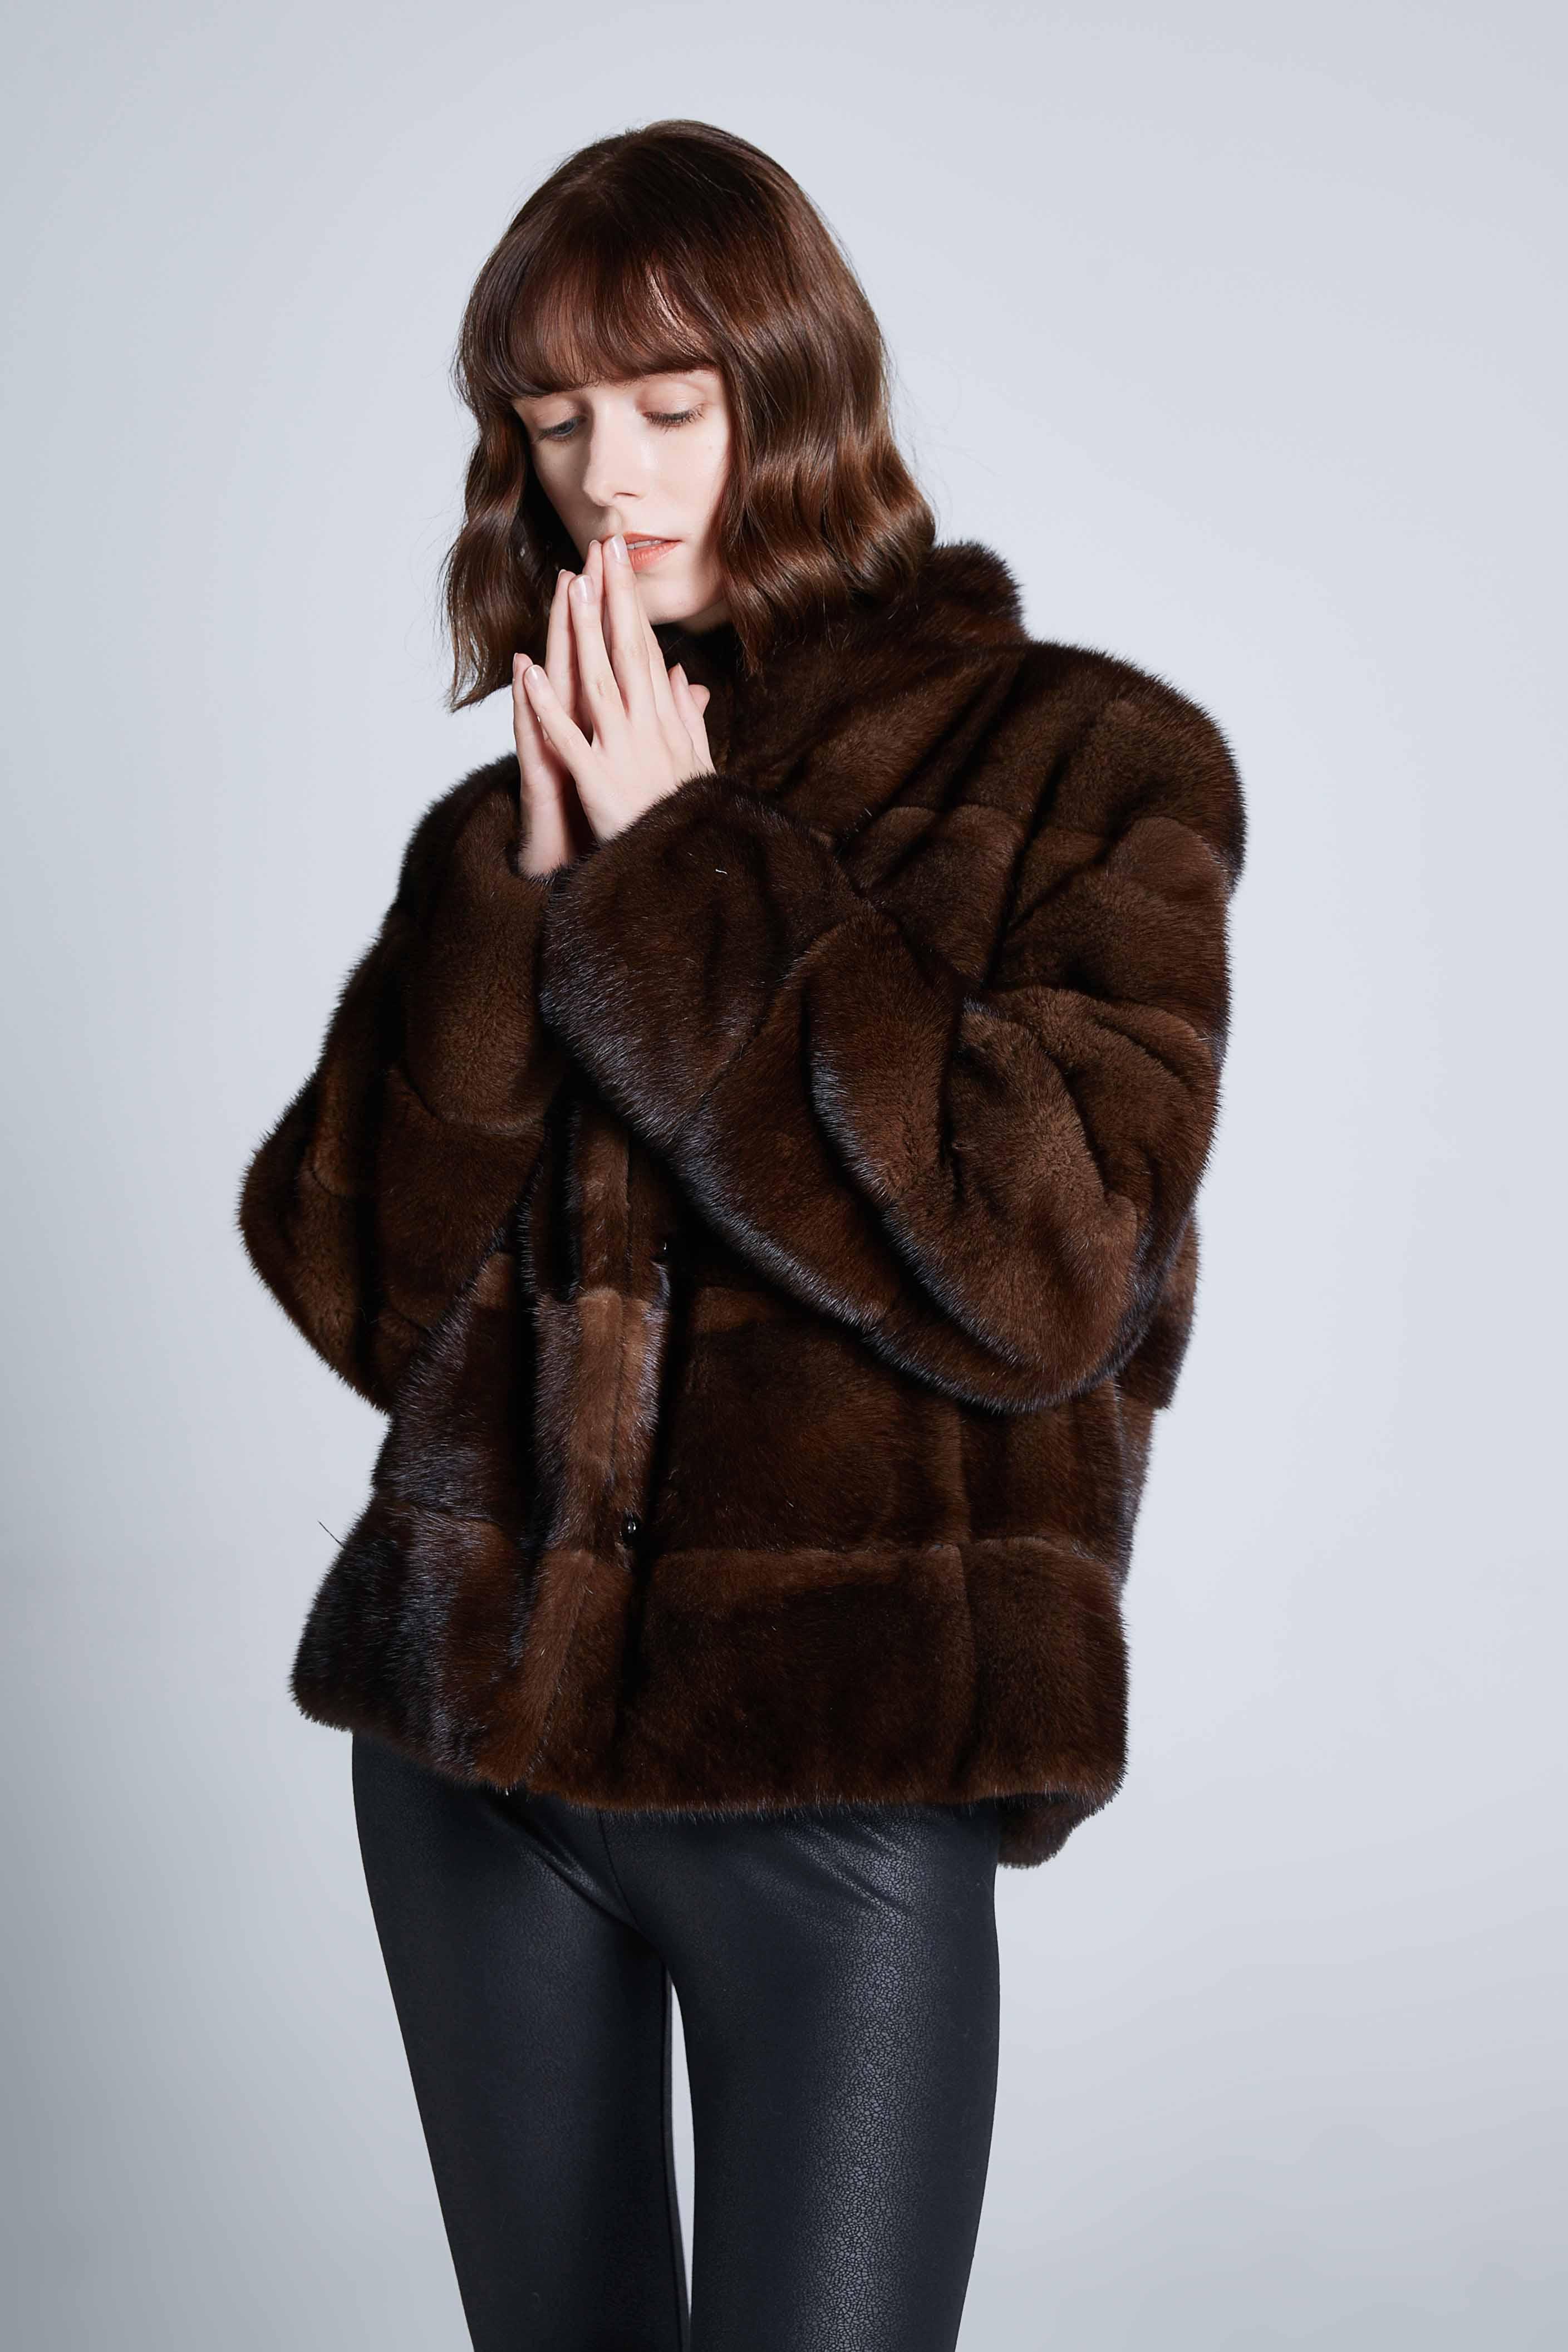 Изображение товара: Куртка Zirunking женская из натуральной норки, двусторонняя Толстая теплая зимняя верхняя одежда, короткая куртка из натуральной норки, Z202, 2020